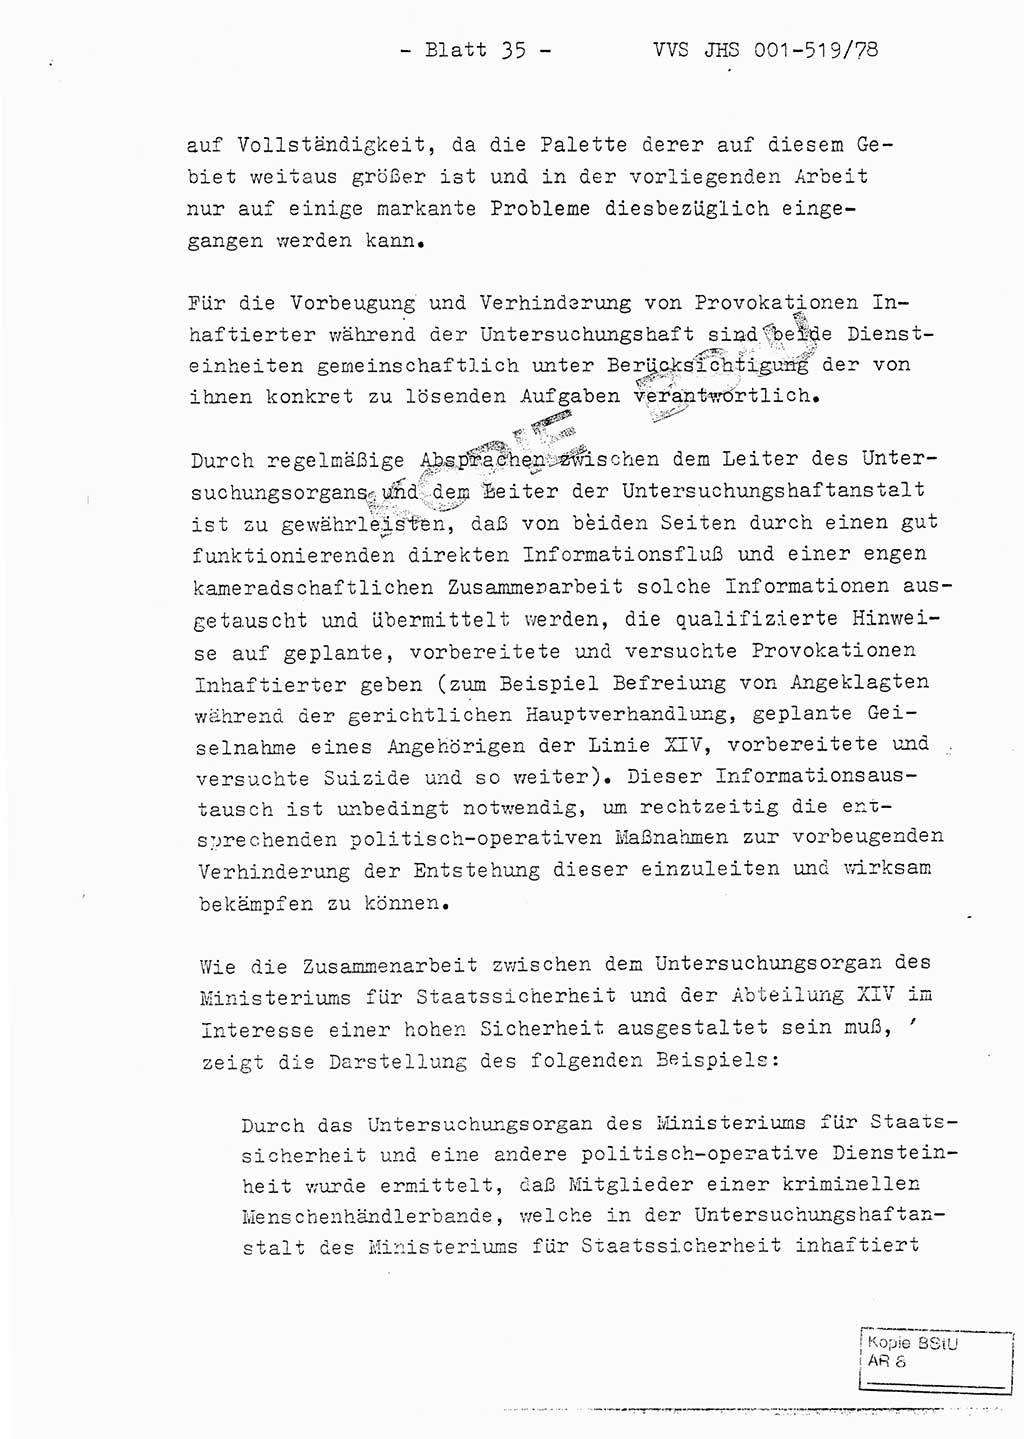 Fachschulabschlußarbeit Hauptmann Alfons Lützelberger (Abt. ⅩⅣ), Ministerium für Staatssicherheit (MfS) [Deutsche Demokratische Republik (DDR)], Juristische Hochschule (JHS), Vertrauliche Verschlußsache (VVS) 001-519/78, Potsdam 1978, Blatt 35 (FS-Abschl.-Arb. MfS DDR JHS VVS 001-519/78 1978, Bl. 35)